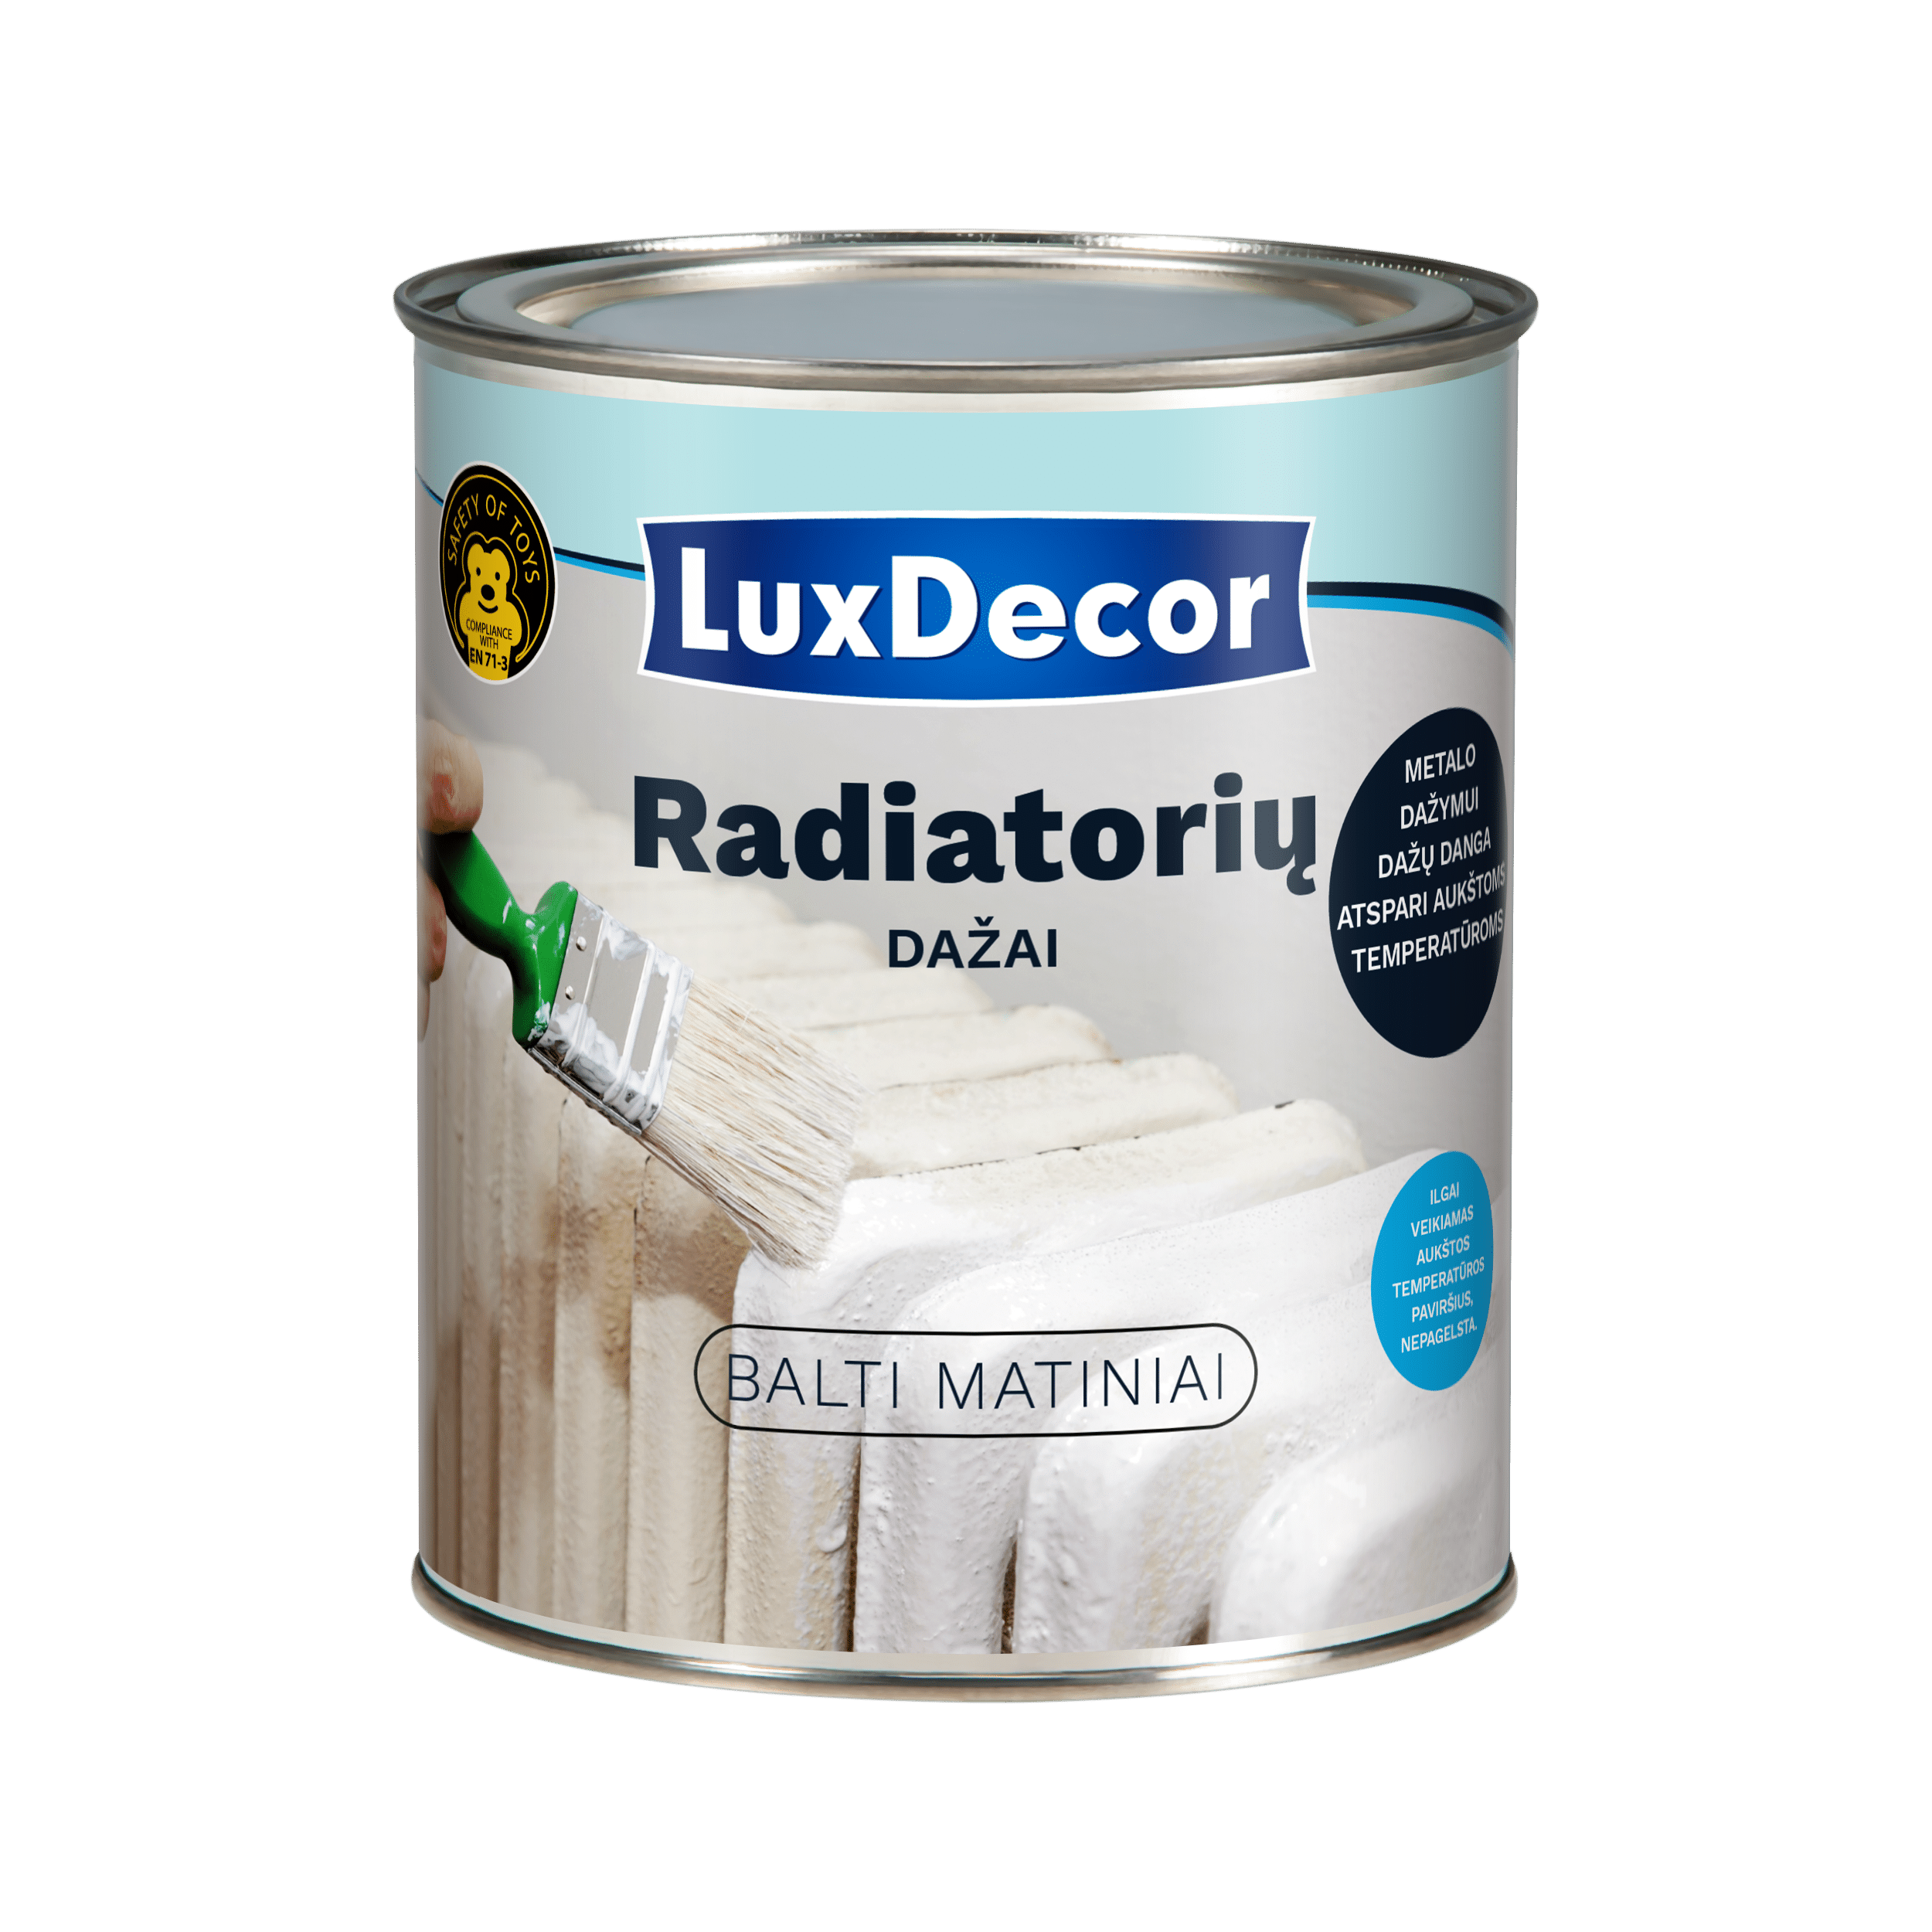 Luxdecor radiatorių dažai